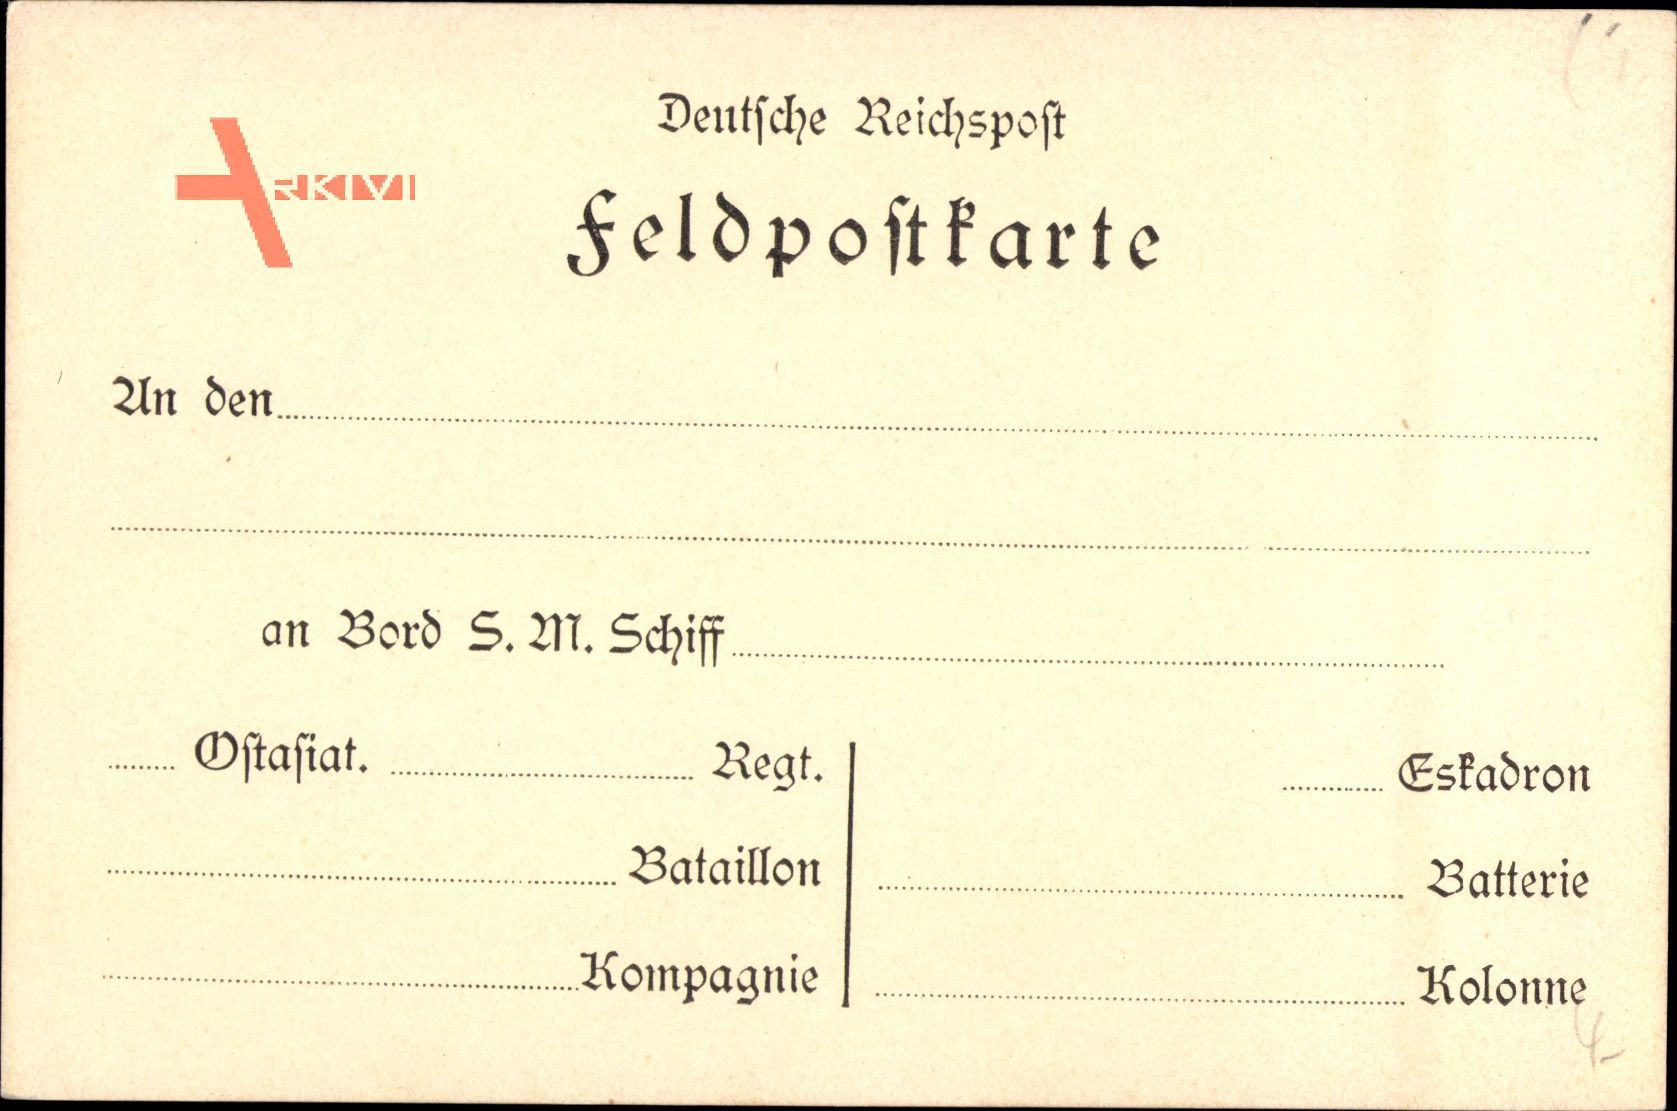 Feldpostkarte, An den, an Bord S. M. Schiff, Ostasiat. Regiment